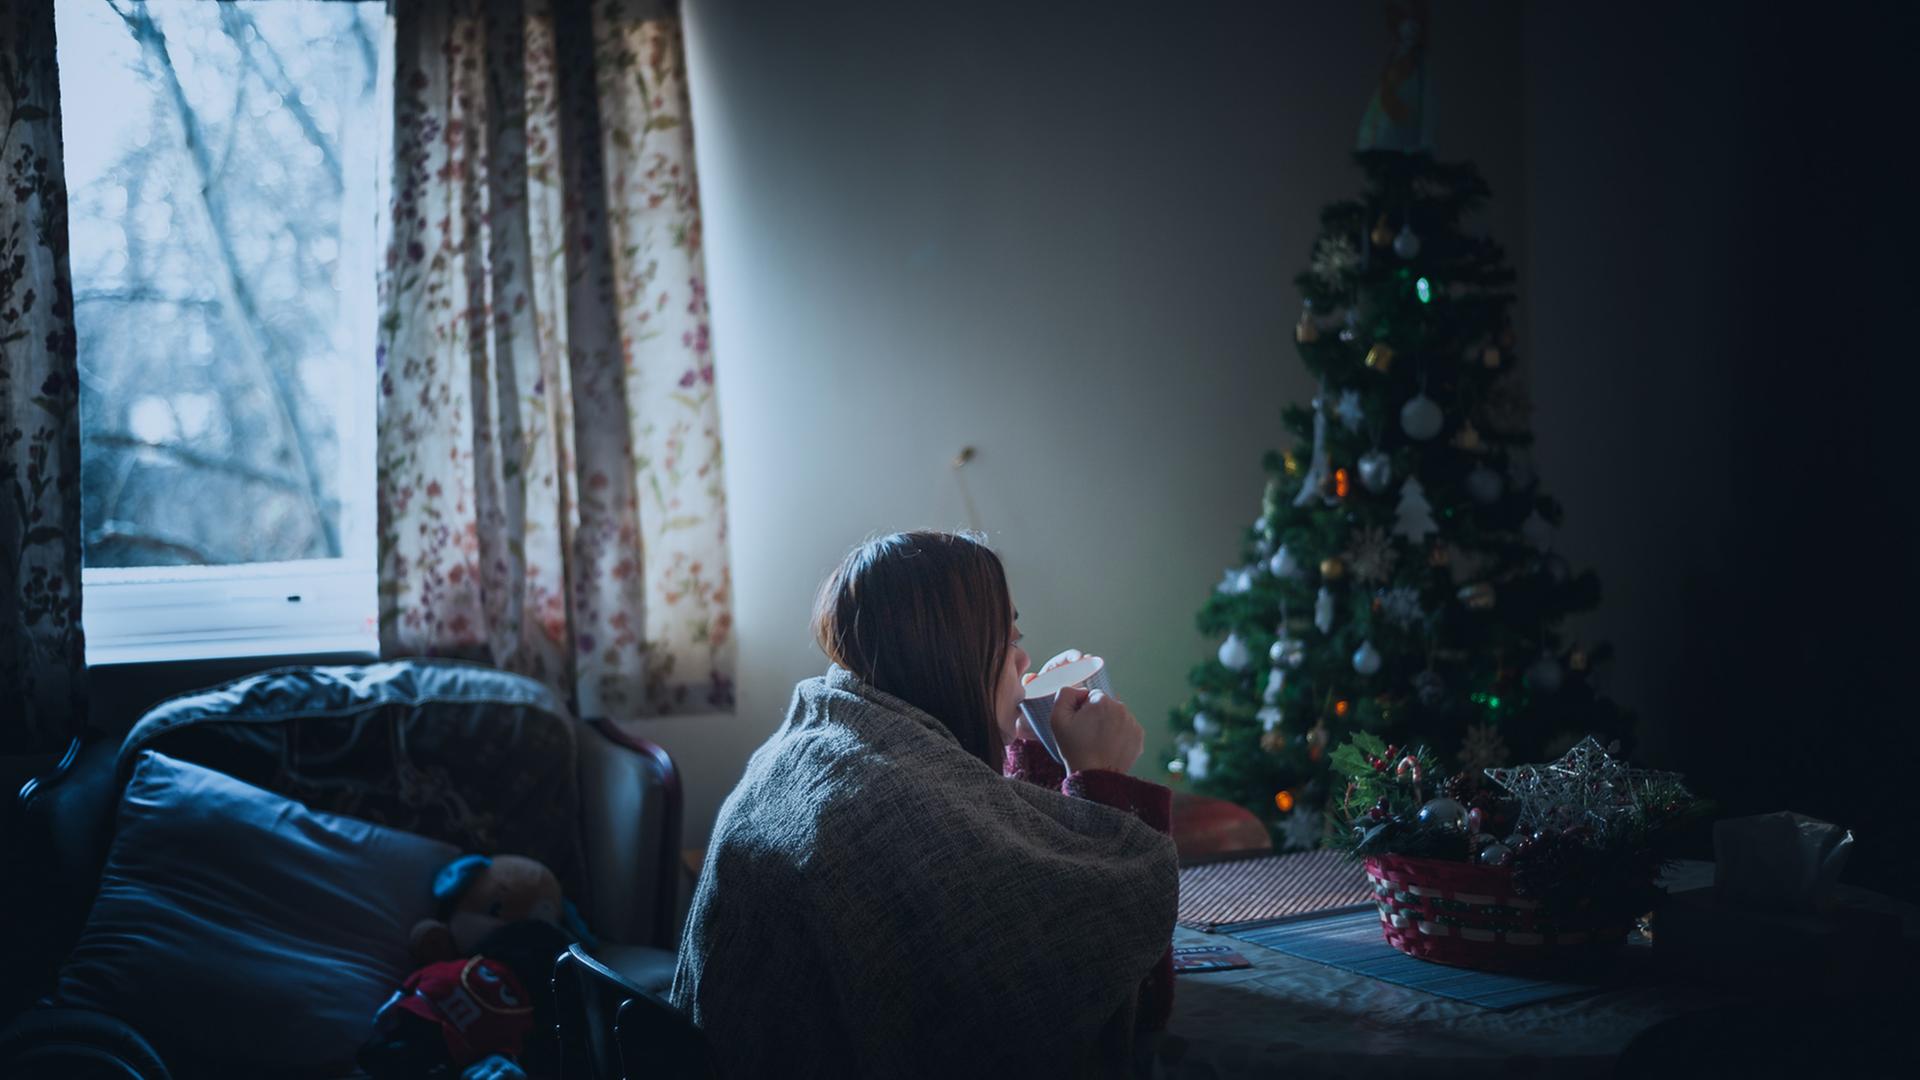 In den Tagen nach Weihnachten kommt eine Frau zur Ruhe - vielschichtige Impressionen von ihren ausgedehnten Reisen tauchen auf. Zu Sehen: Eine Frau sitzt Tee-trinkend in einem Zimmer, im hintergrund ein Weihnmachtsbaum.